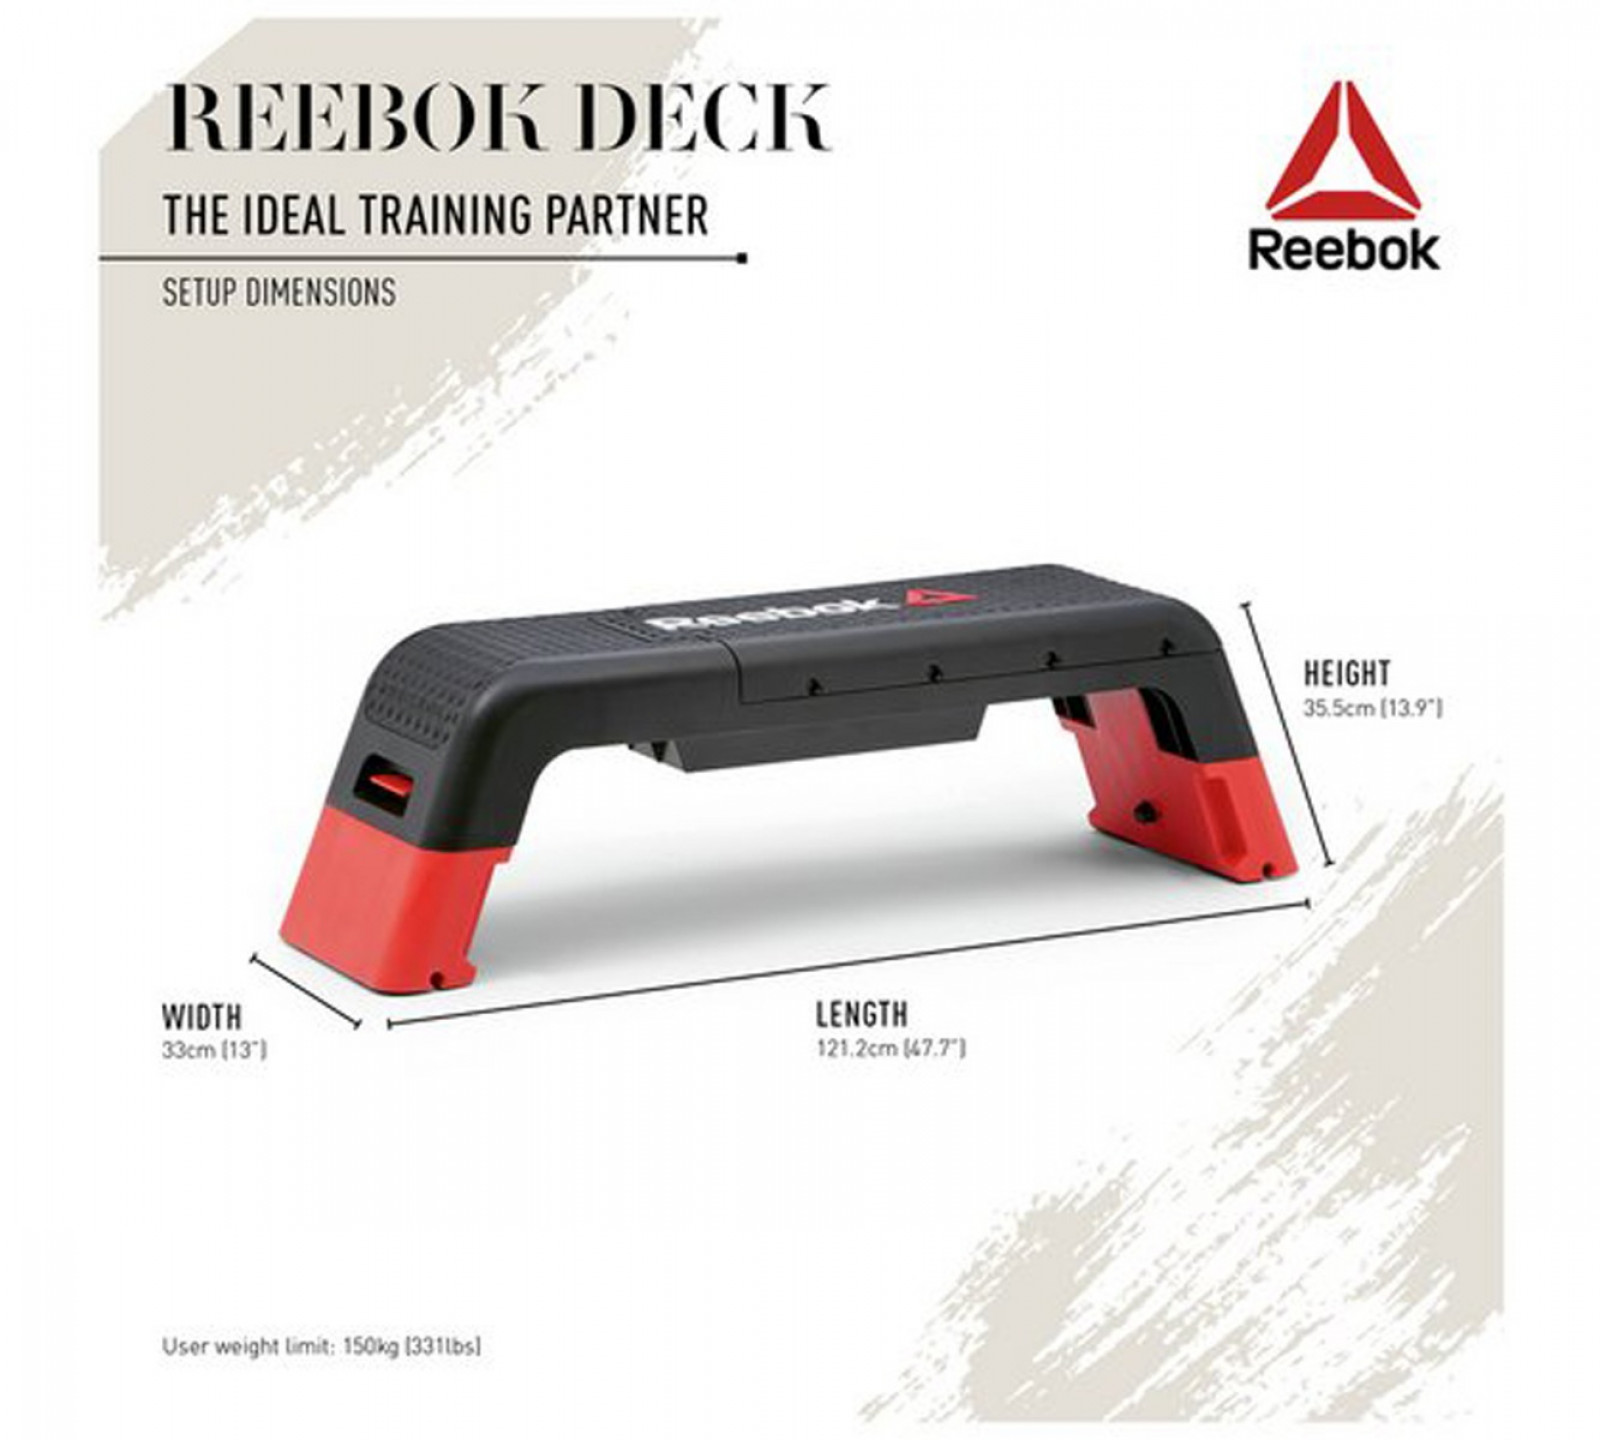 reebok deck weight limit